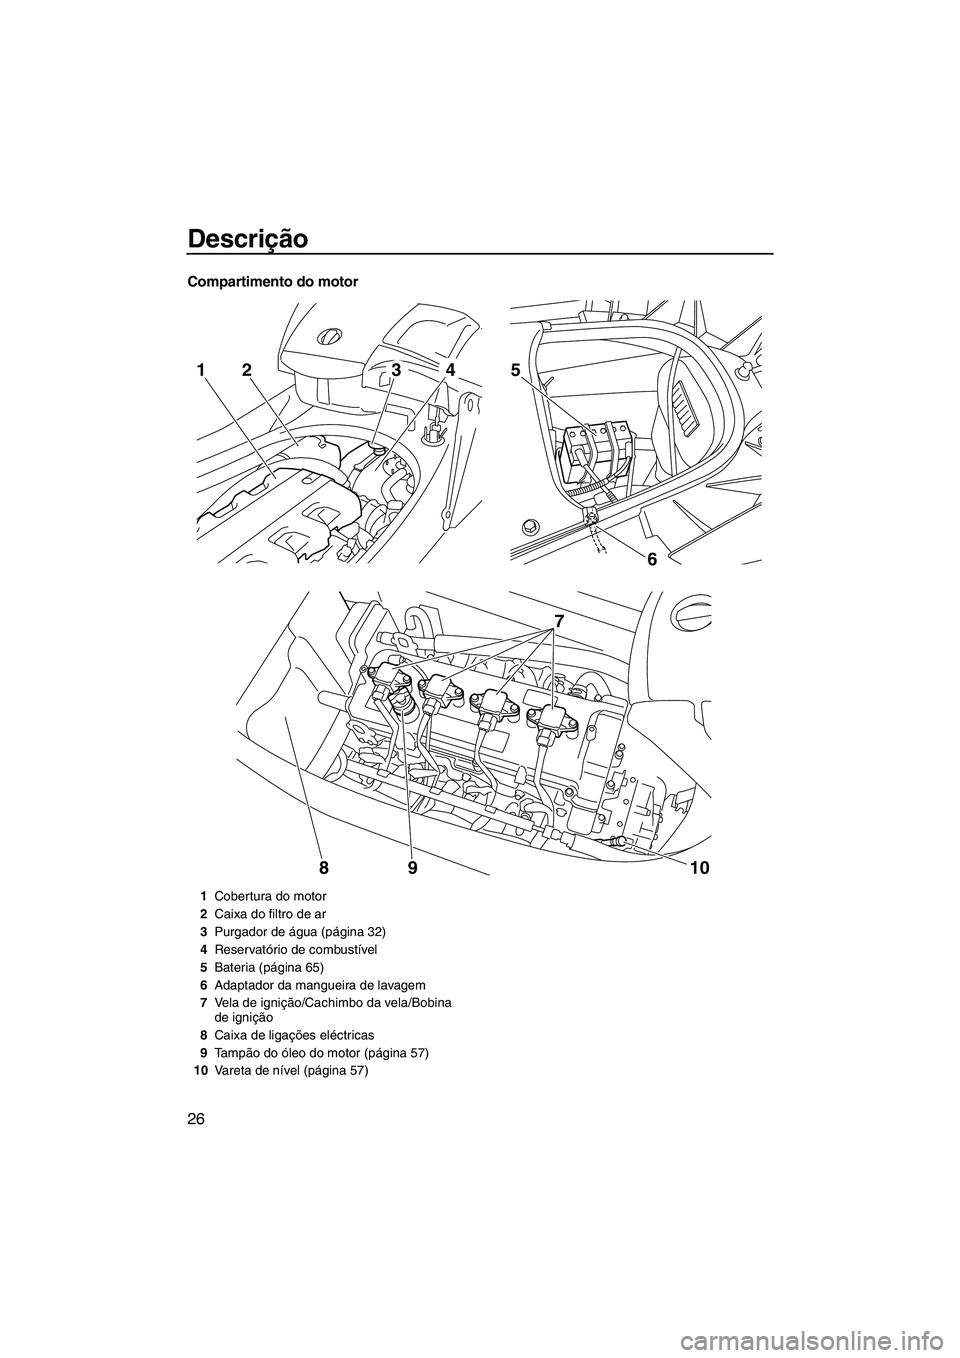 YAMAHA FX HO CRUISER 2010  Manual de utilização (in Portuguese) Descrição
26
Compartimento do motor
6 5
7
10 9
8
2143
1Cobertura do motor
2Caixa do filtro de ar
3Purgador de água (página 32)
4Reservatório de combustível
5Bateria (página 65)
6Adaptador da ma